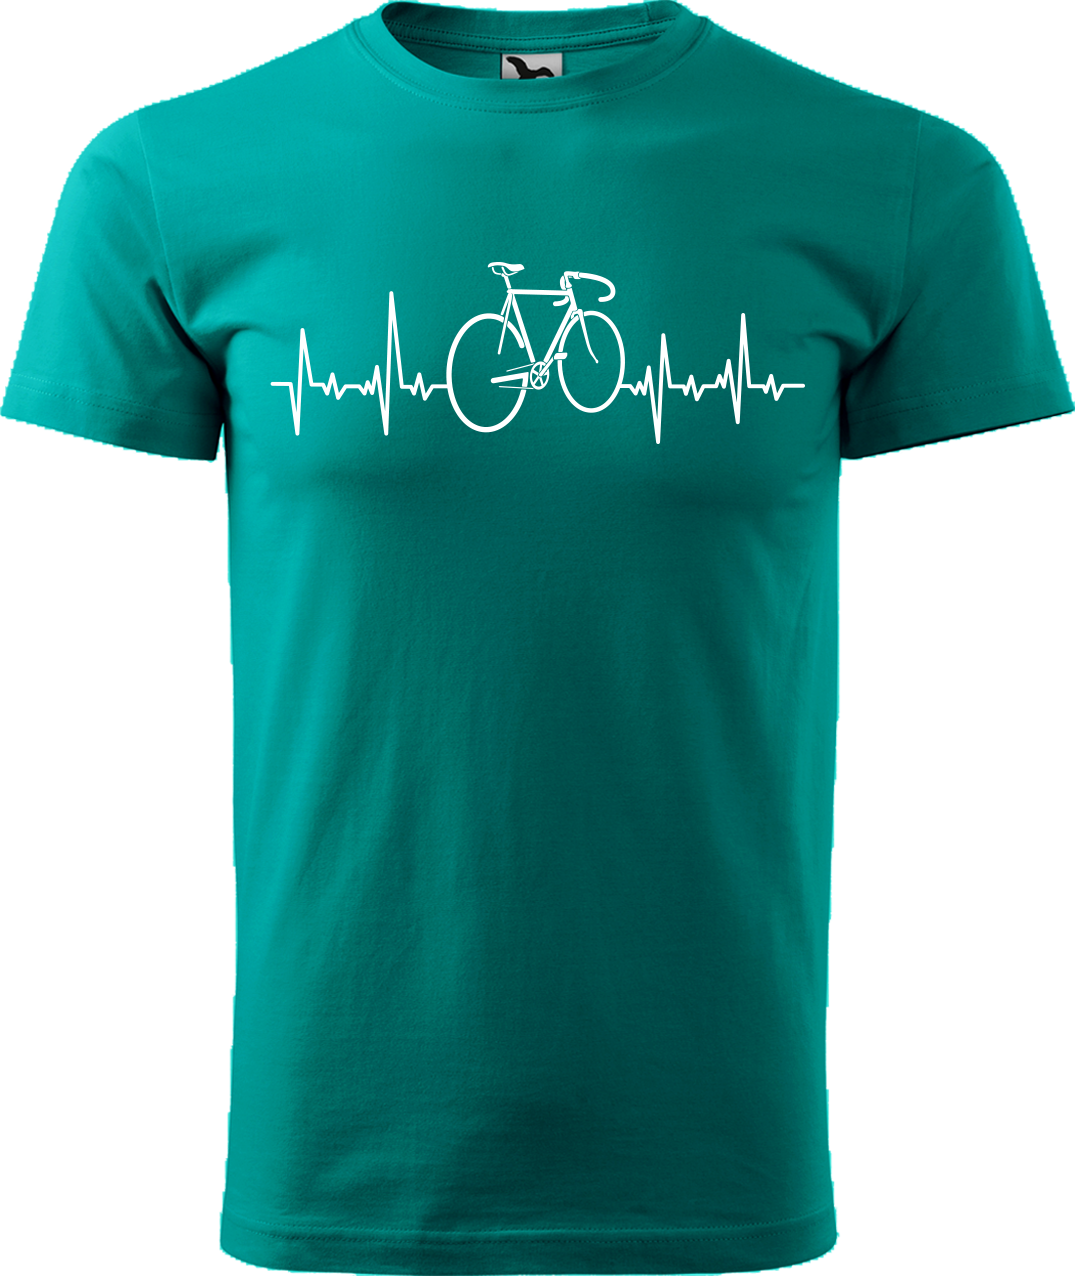 Pánské tričko s kolem - Cyklistův kardiogram Velikost: XL, Barva: Emerald (19)